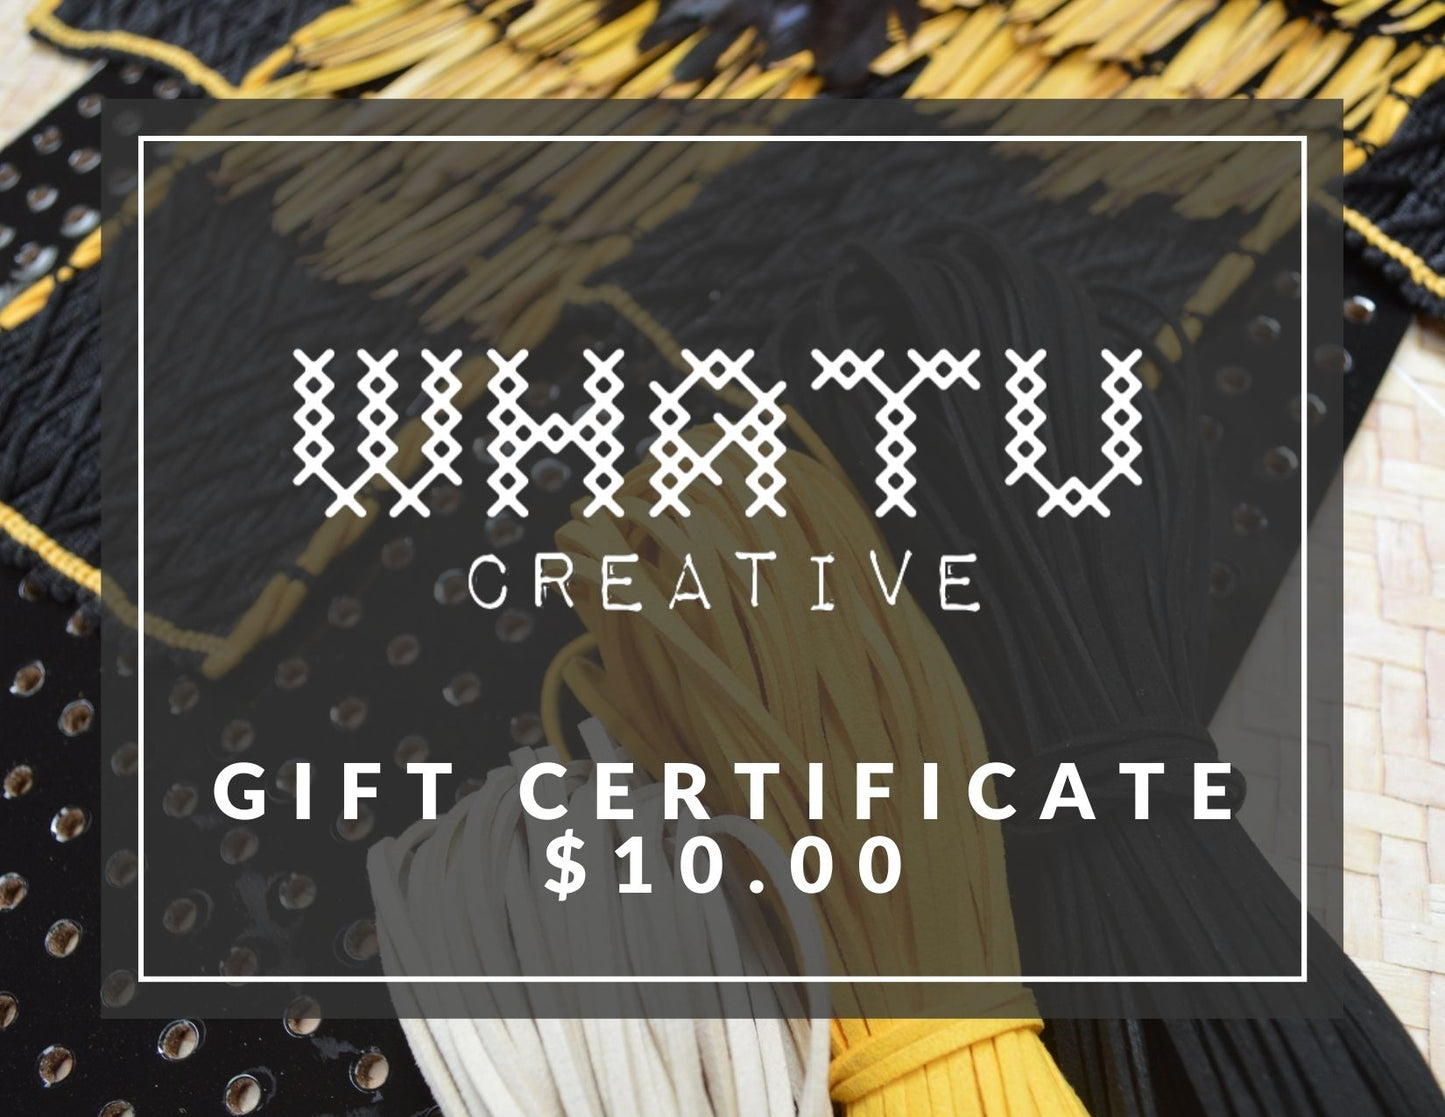 Whatu Creative Gift Certificate